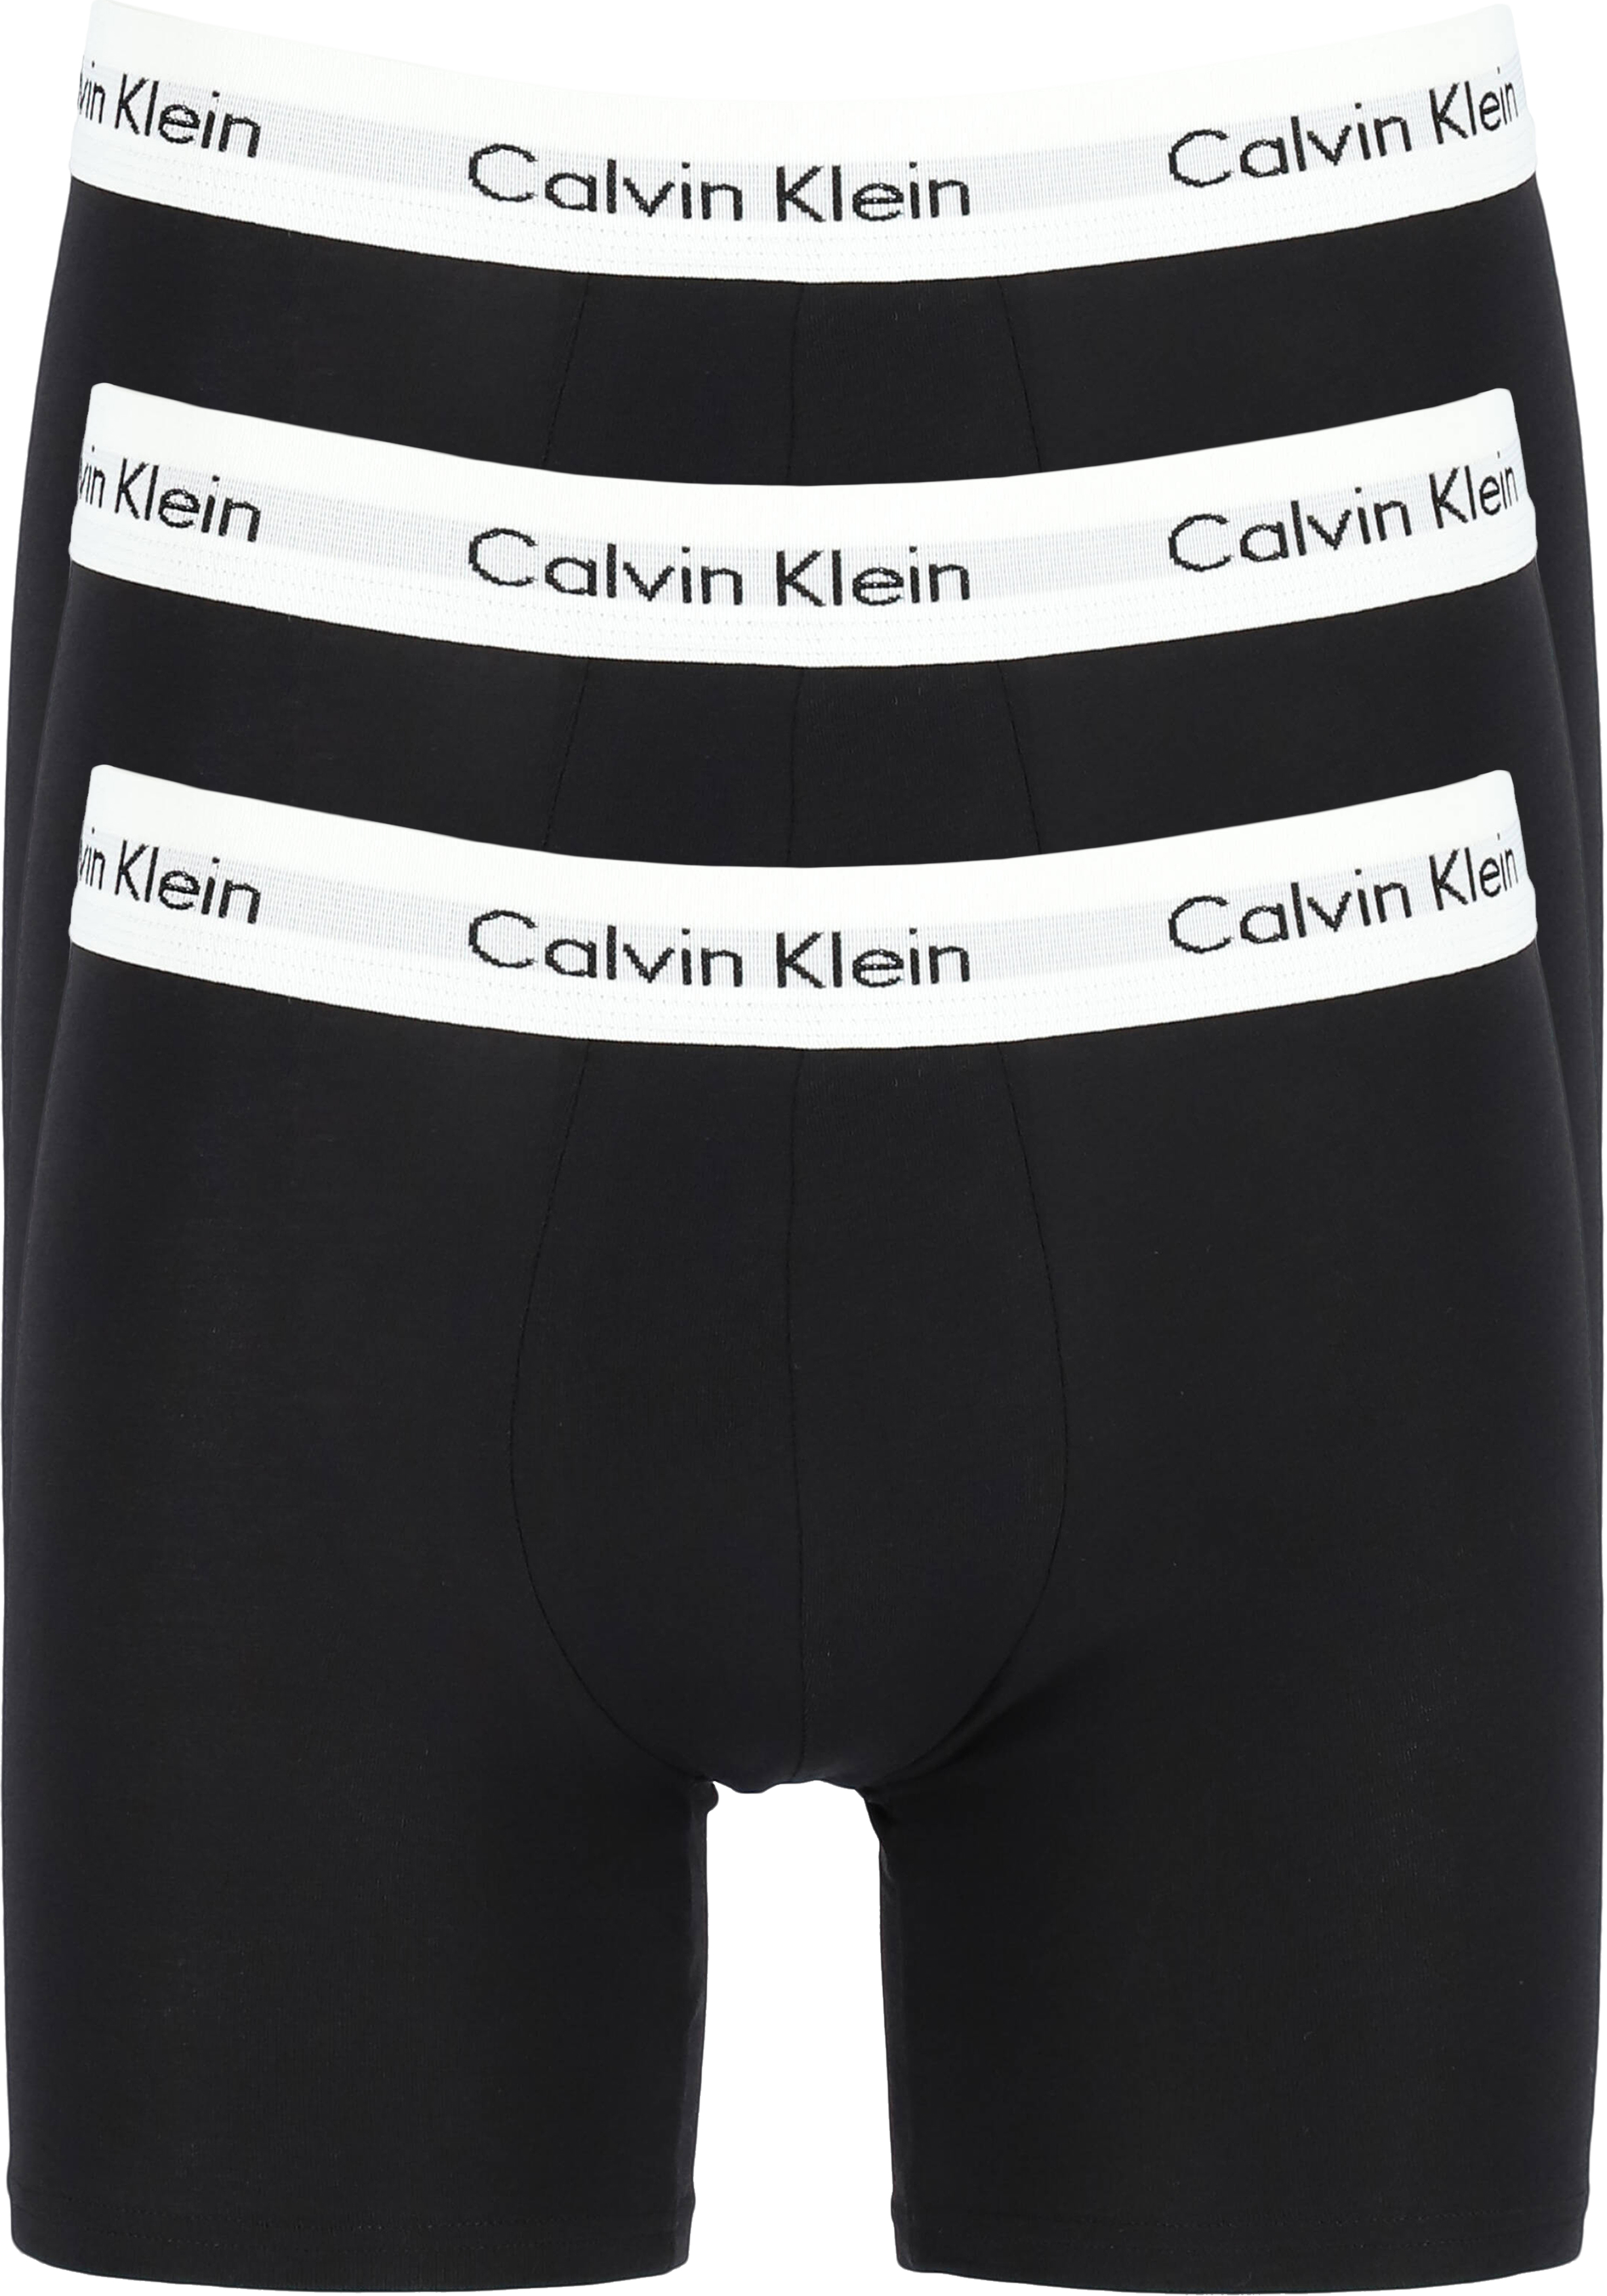 kans Buskruit Afsnijden Calvin Klein Cotton Stretch boxer brief (3-pack), heren boxers extra... -  Shop de nieuwste voorjaarsmode